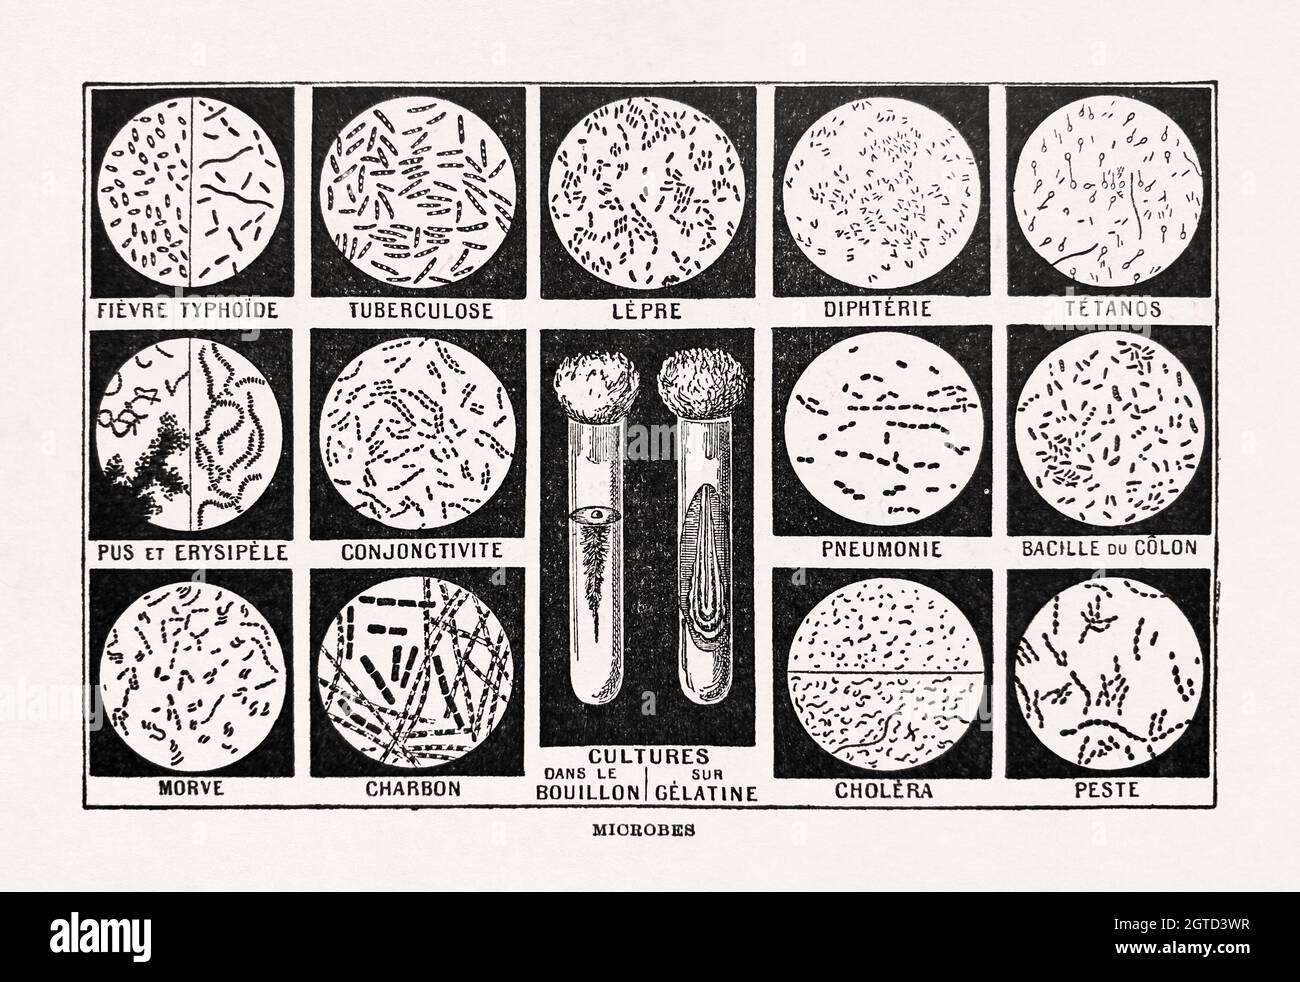 Alte Illustration über die Mikroben, die im französischen Wörterbuch 'Dictionnaire complet illustré' des Herausgebers Larousse im Jahr 1899 gedruckt wurde. Stockfoto